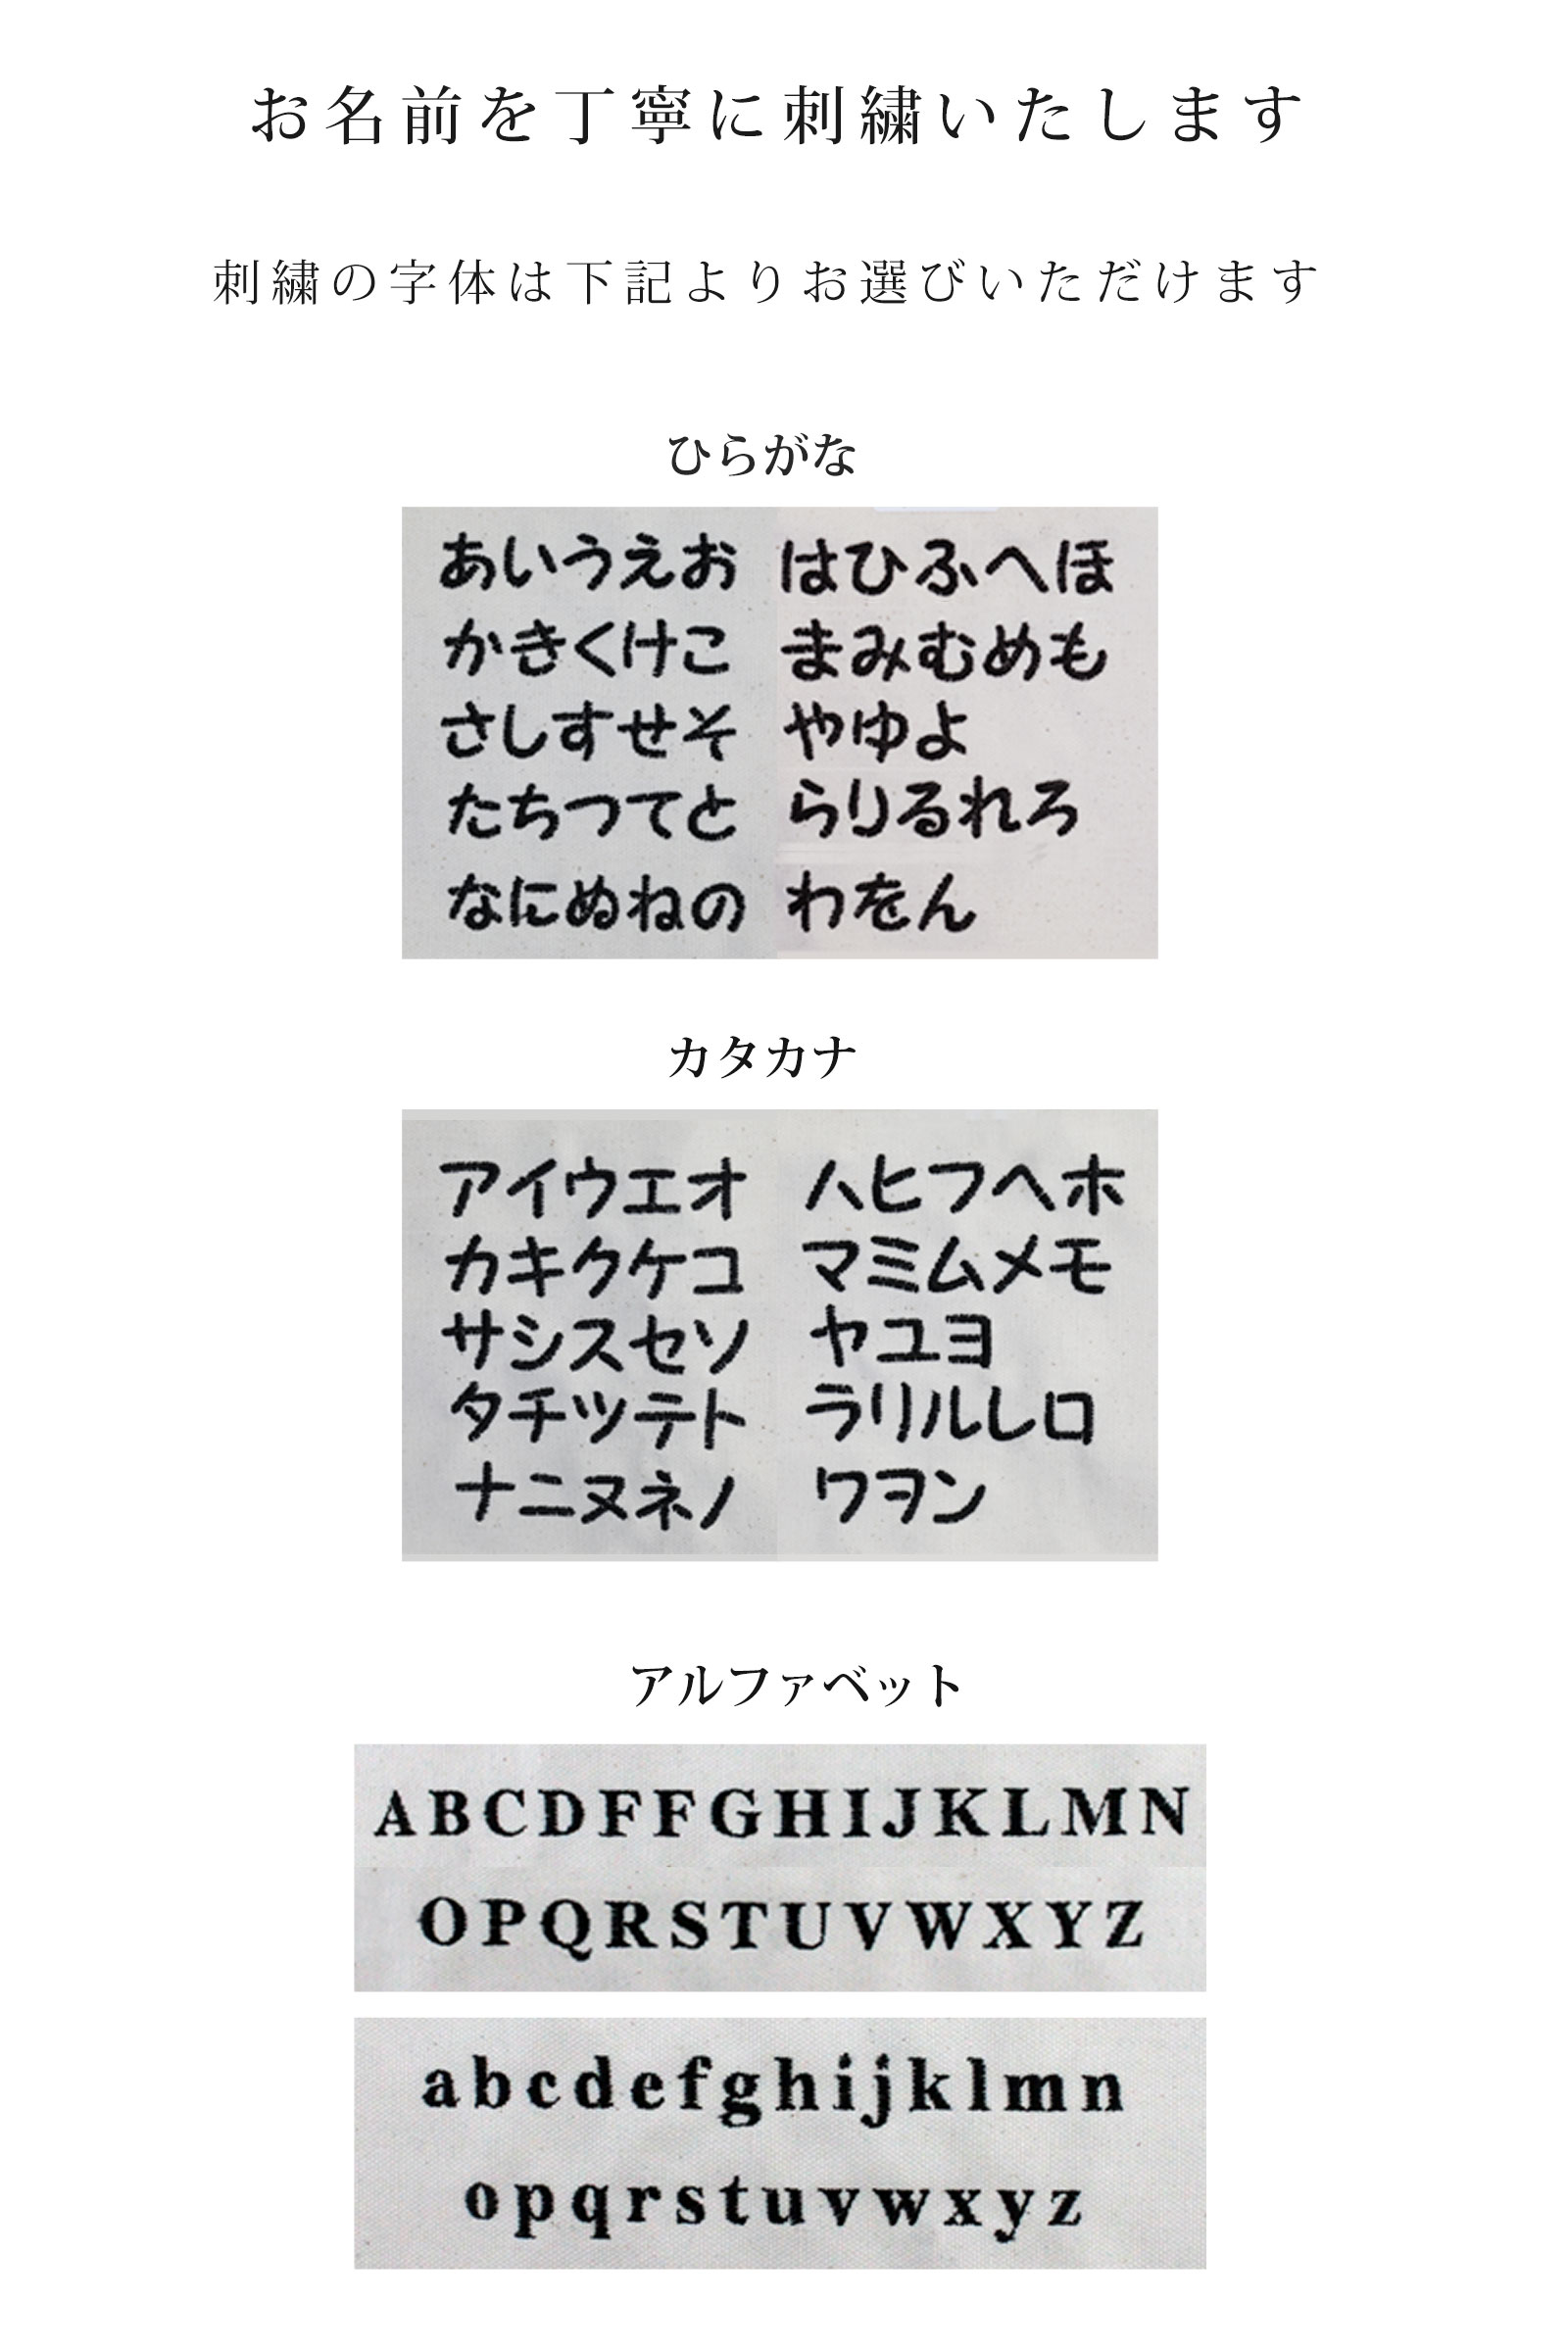 日本製 キャリー用カバー キャリーケース 犬 猫 防寒 冬 サイズ お名前を刺繍します